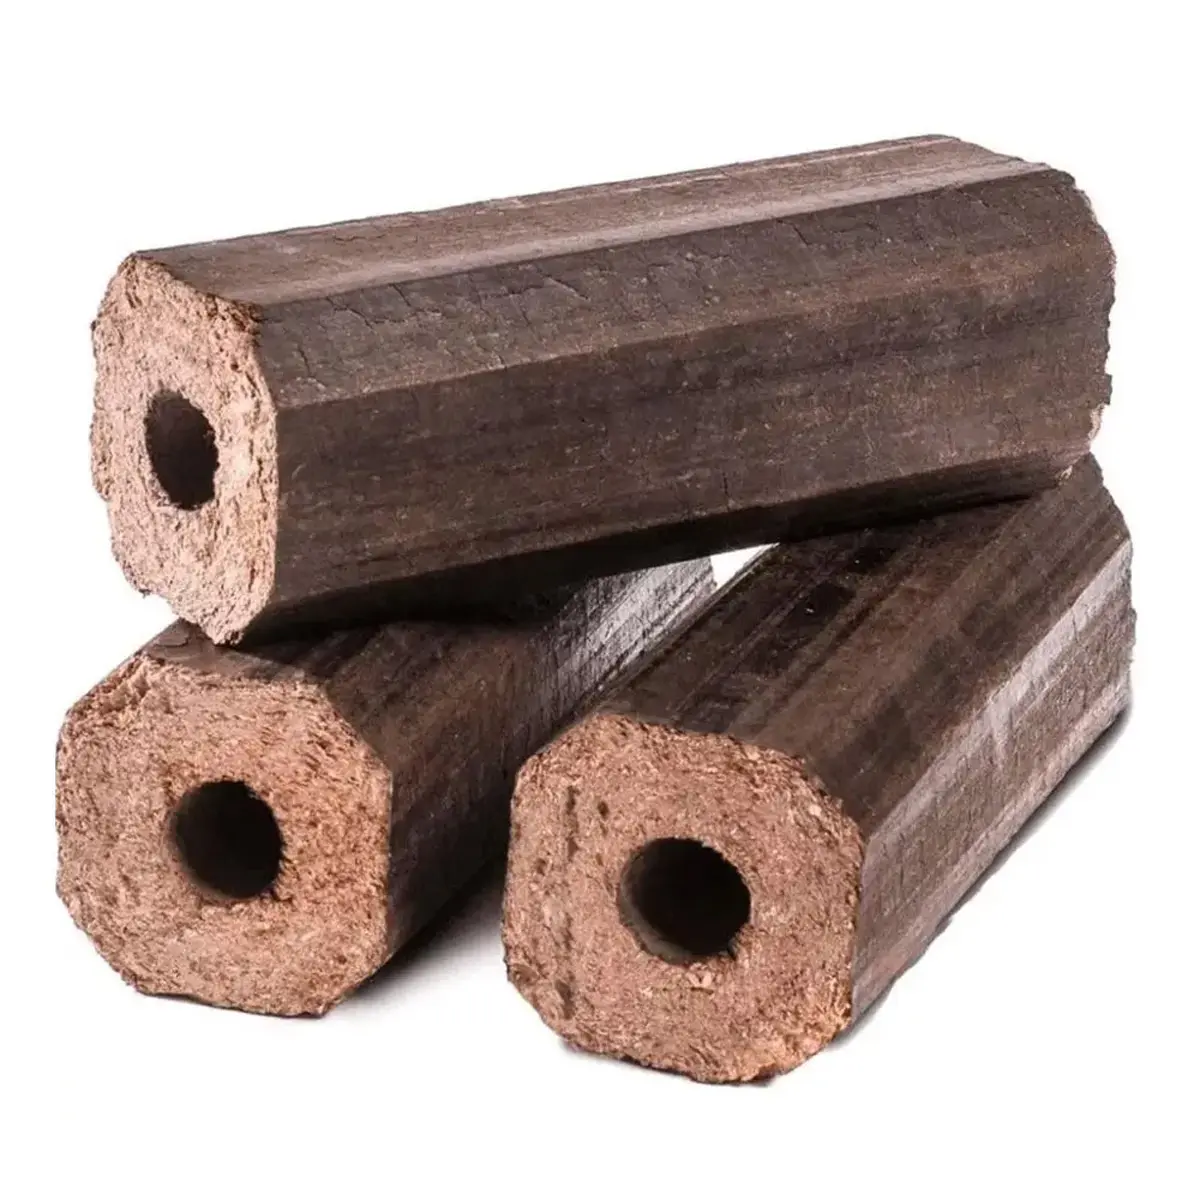 Le bricchette di legno selezionate per il riscaldamento dei pellet di combustibile sono rispettose dell'ambiente e di alta qualità